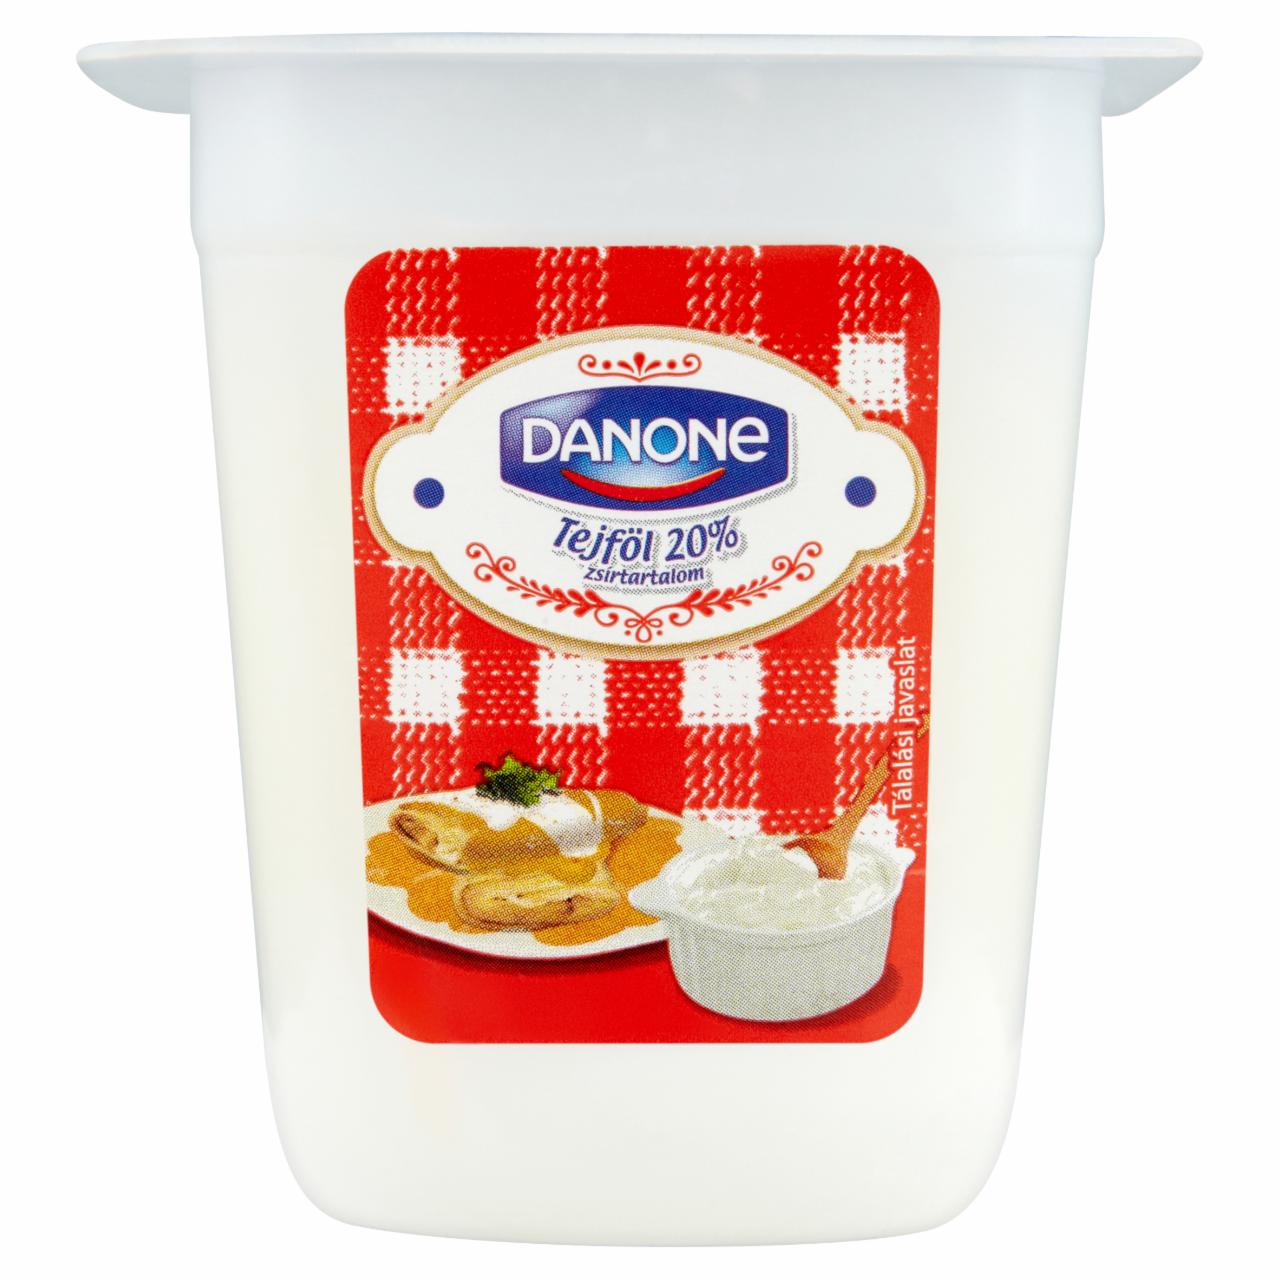 Képek - Danone tejföl 150 g